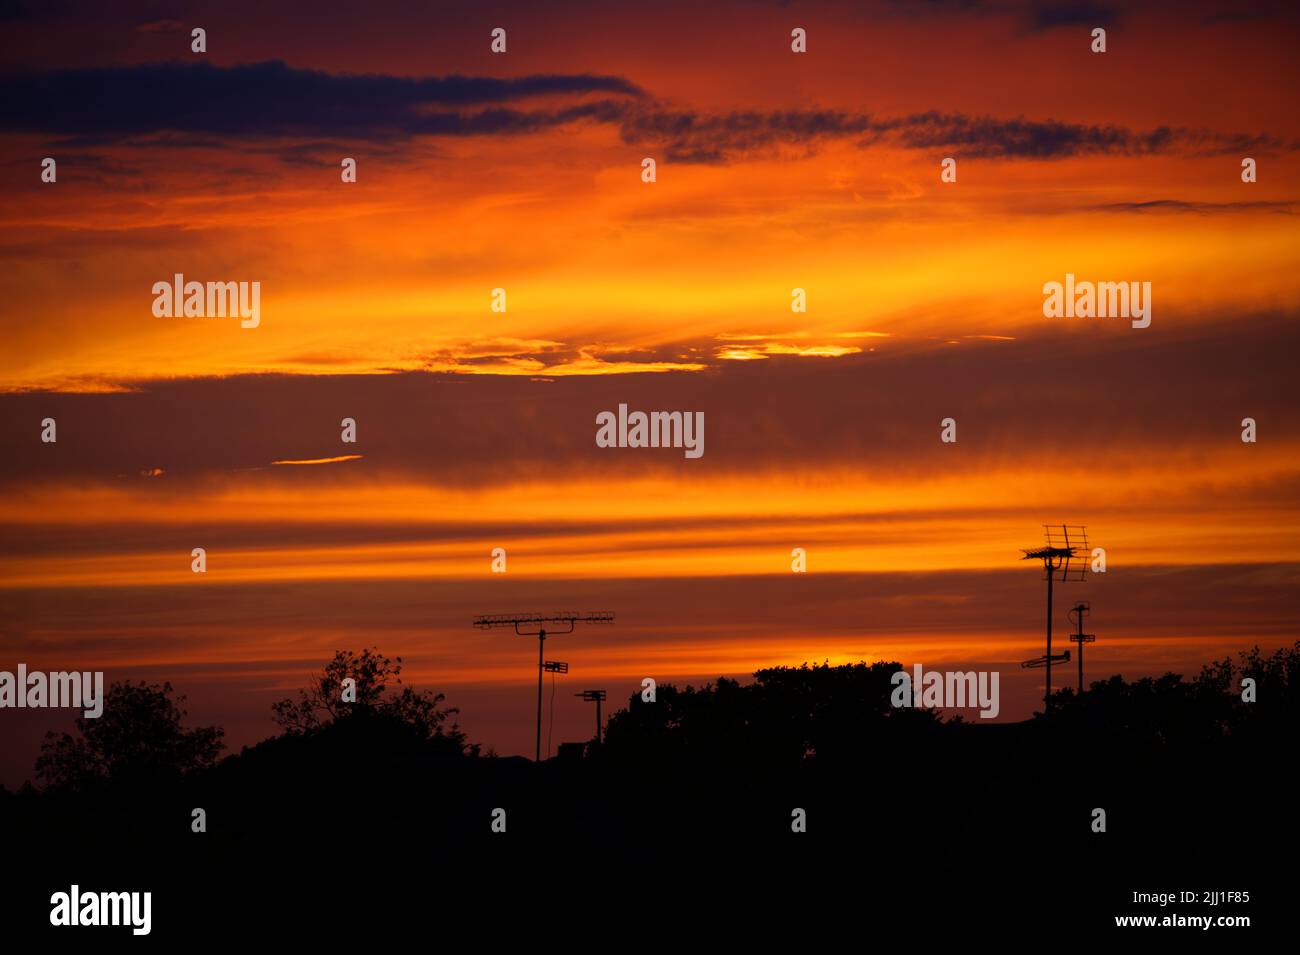 Rote Wolken vom Sonnenuntergang am Abend Stockfoto